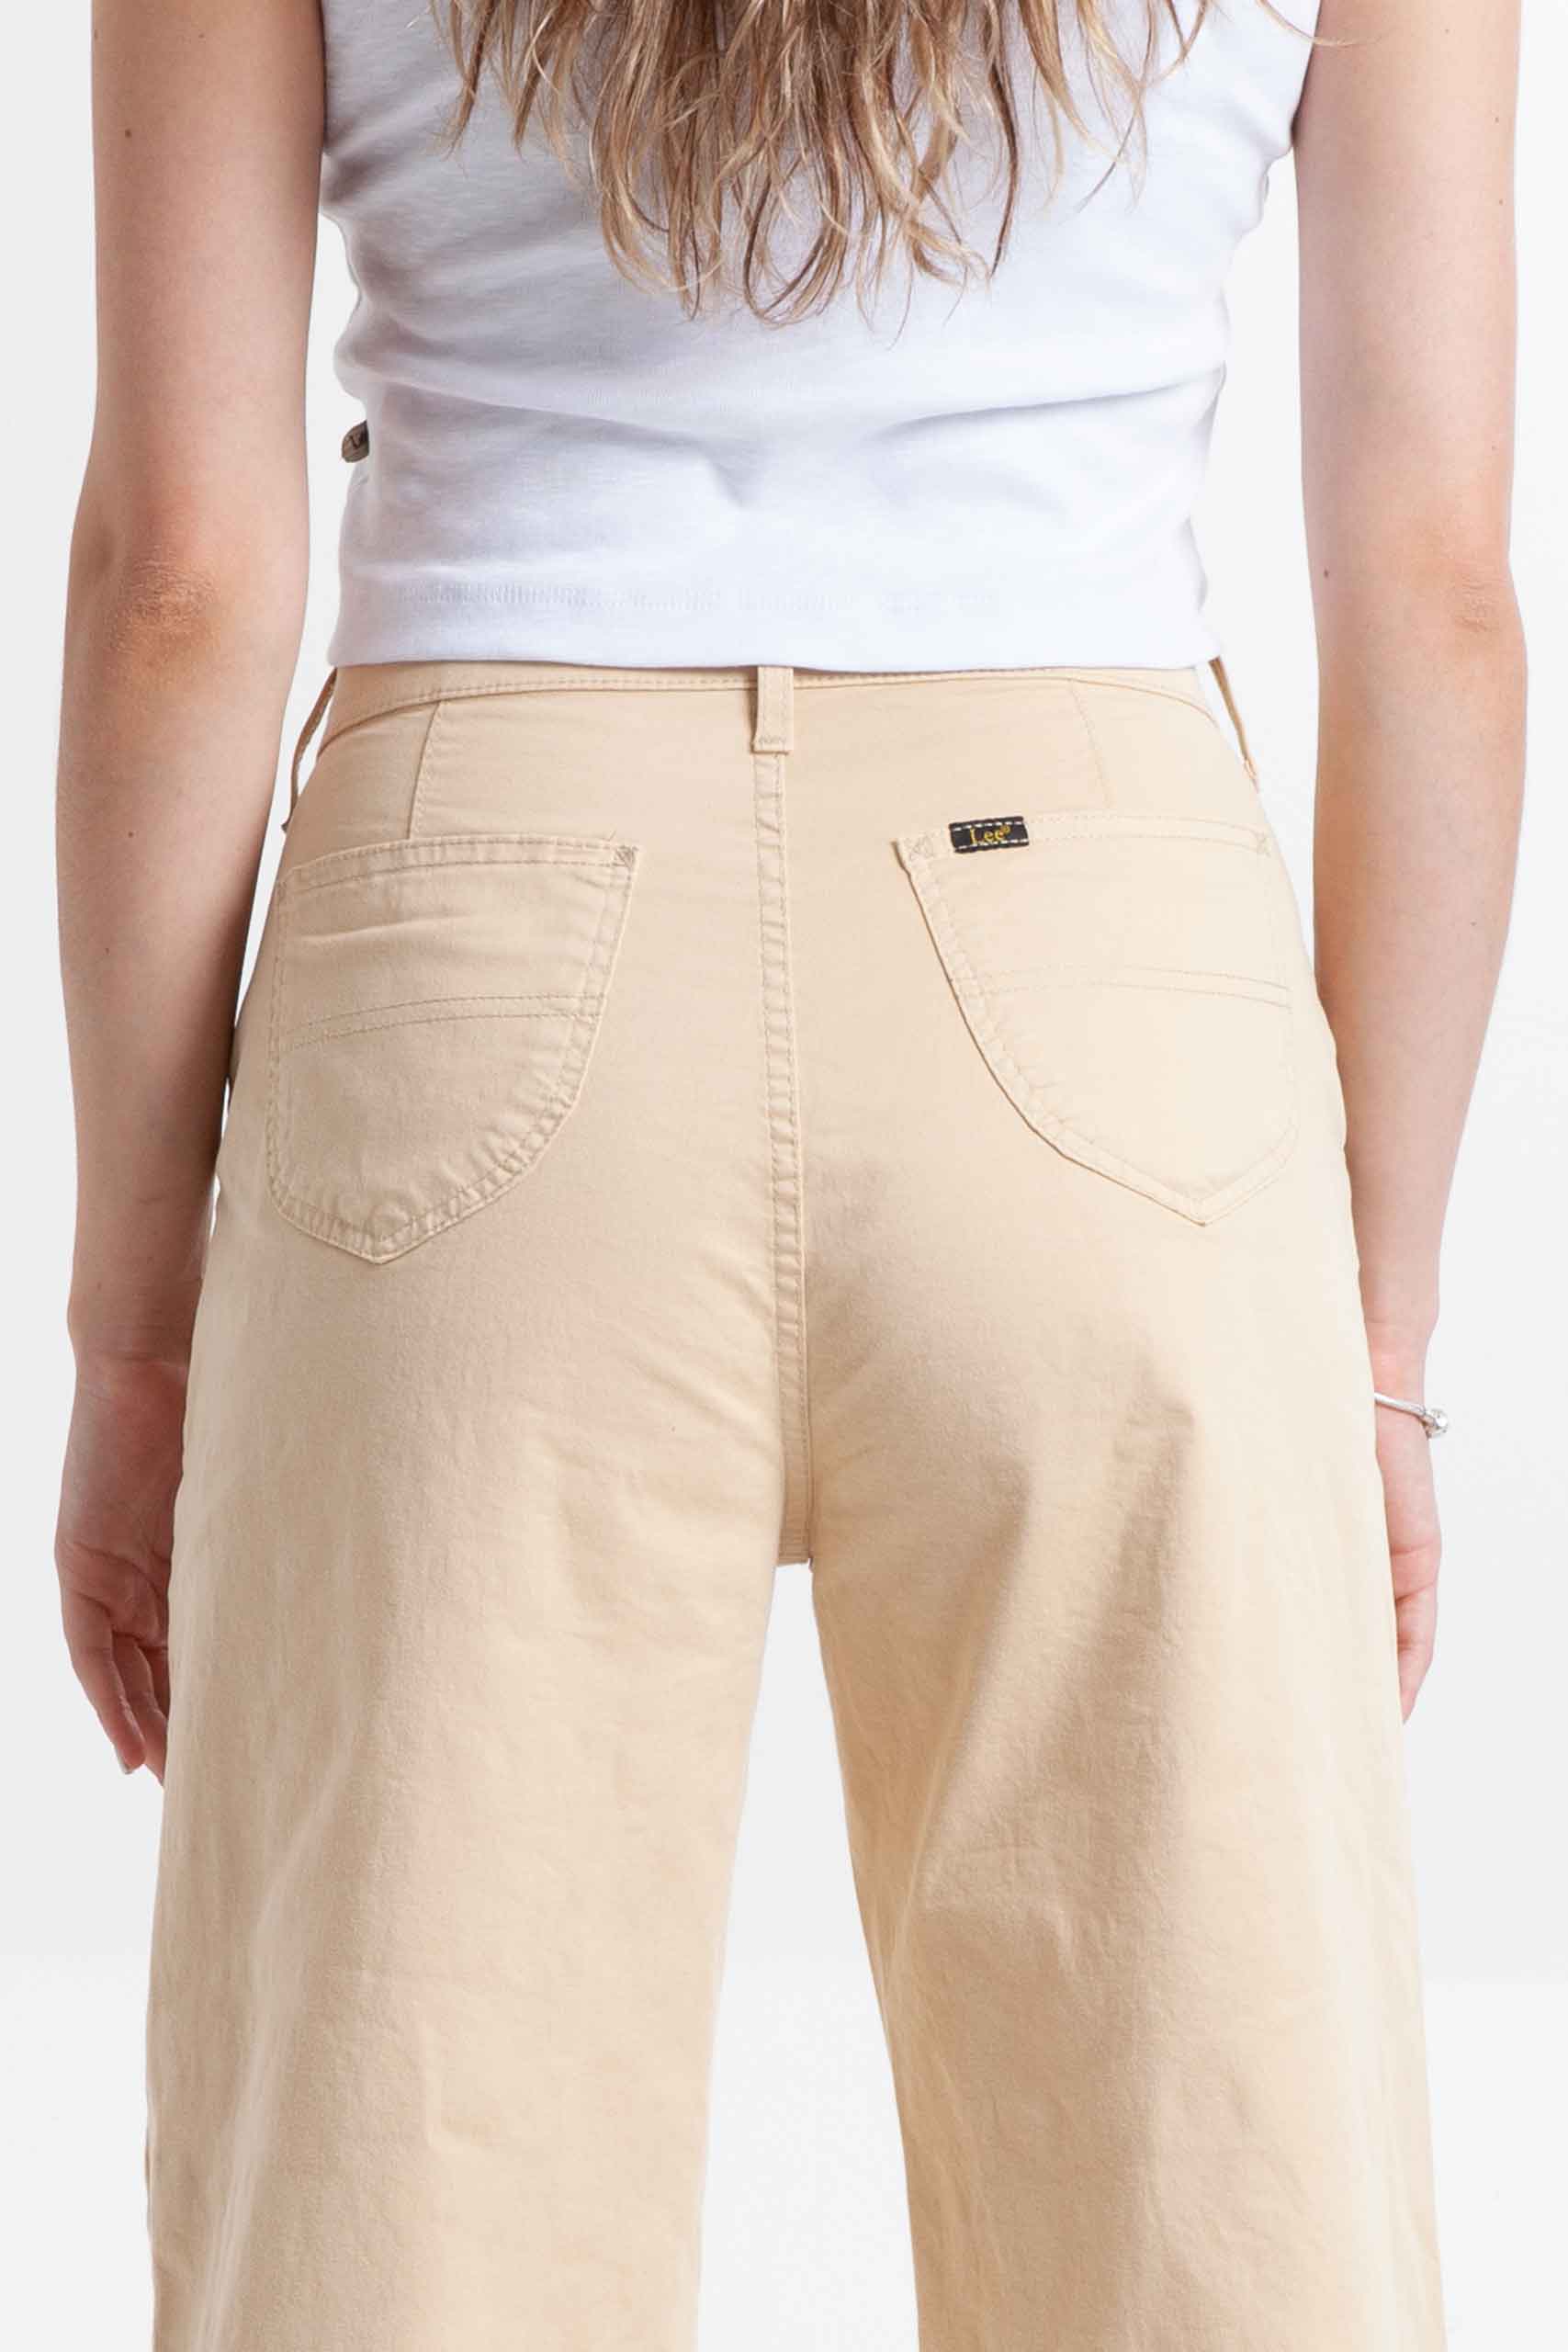 Vista posterior de pantalón de color crema de pierna ancha de marca lee